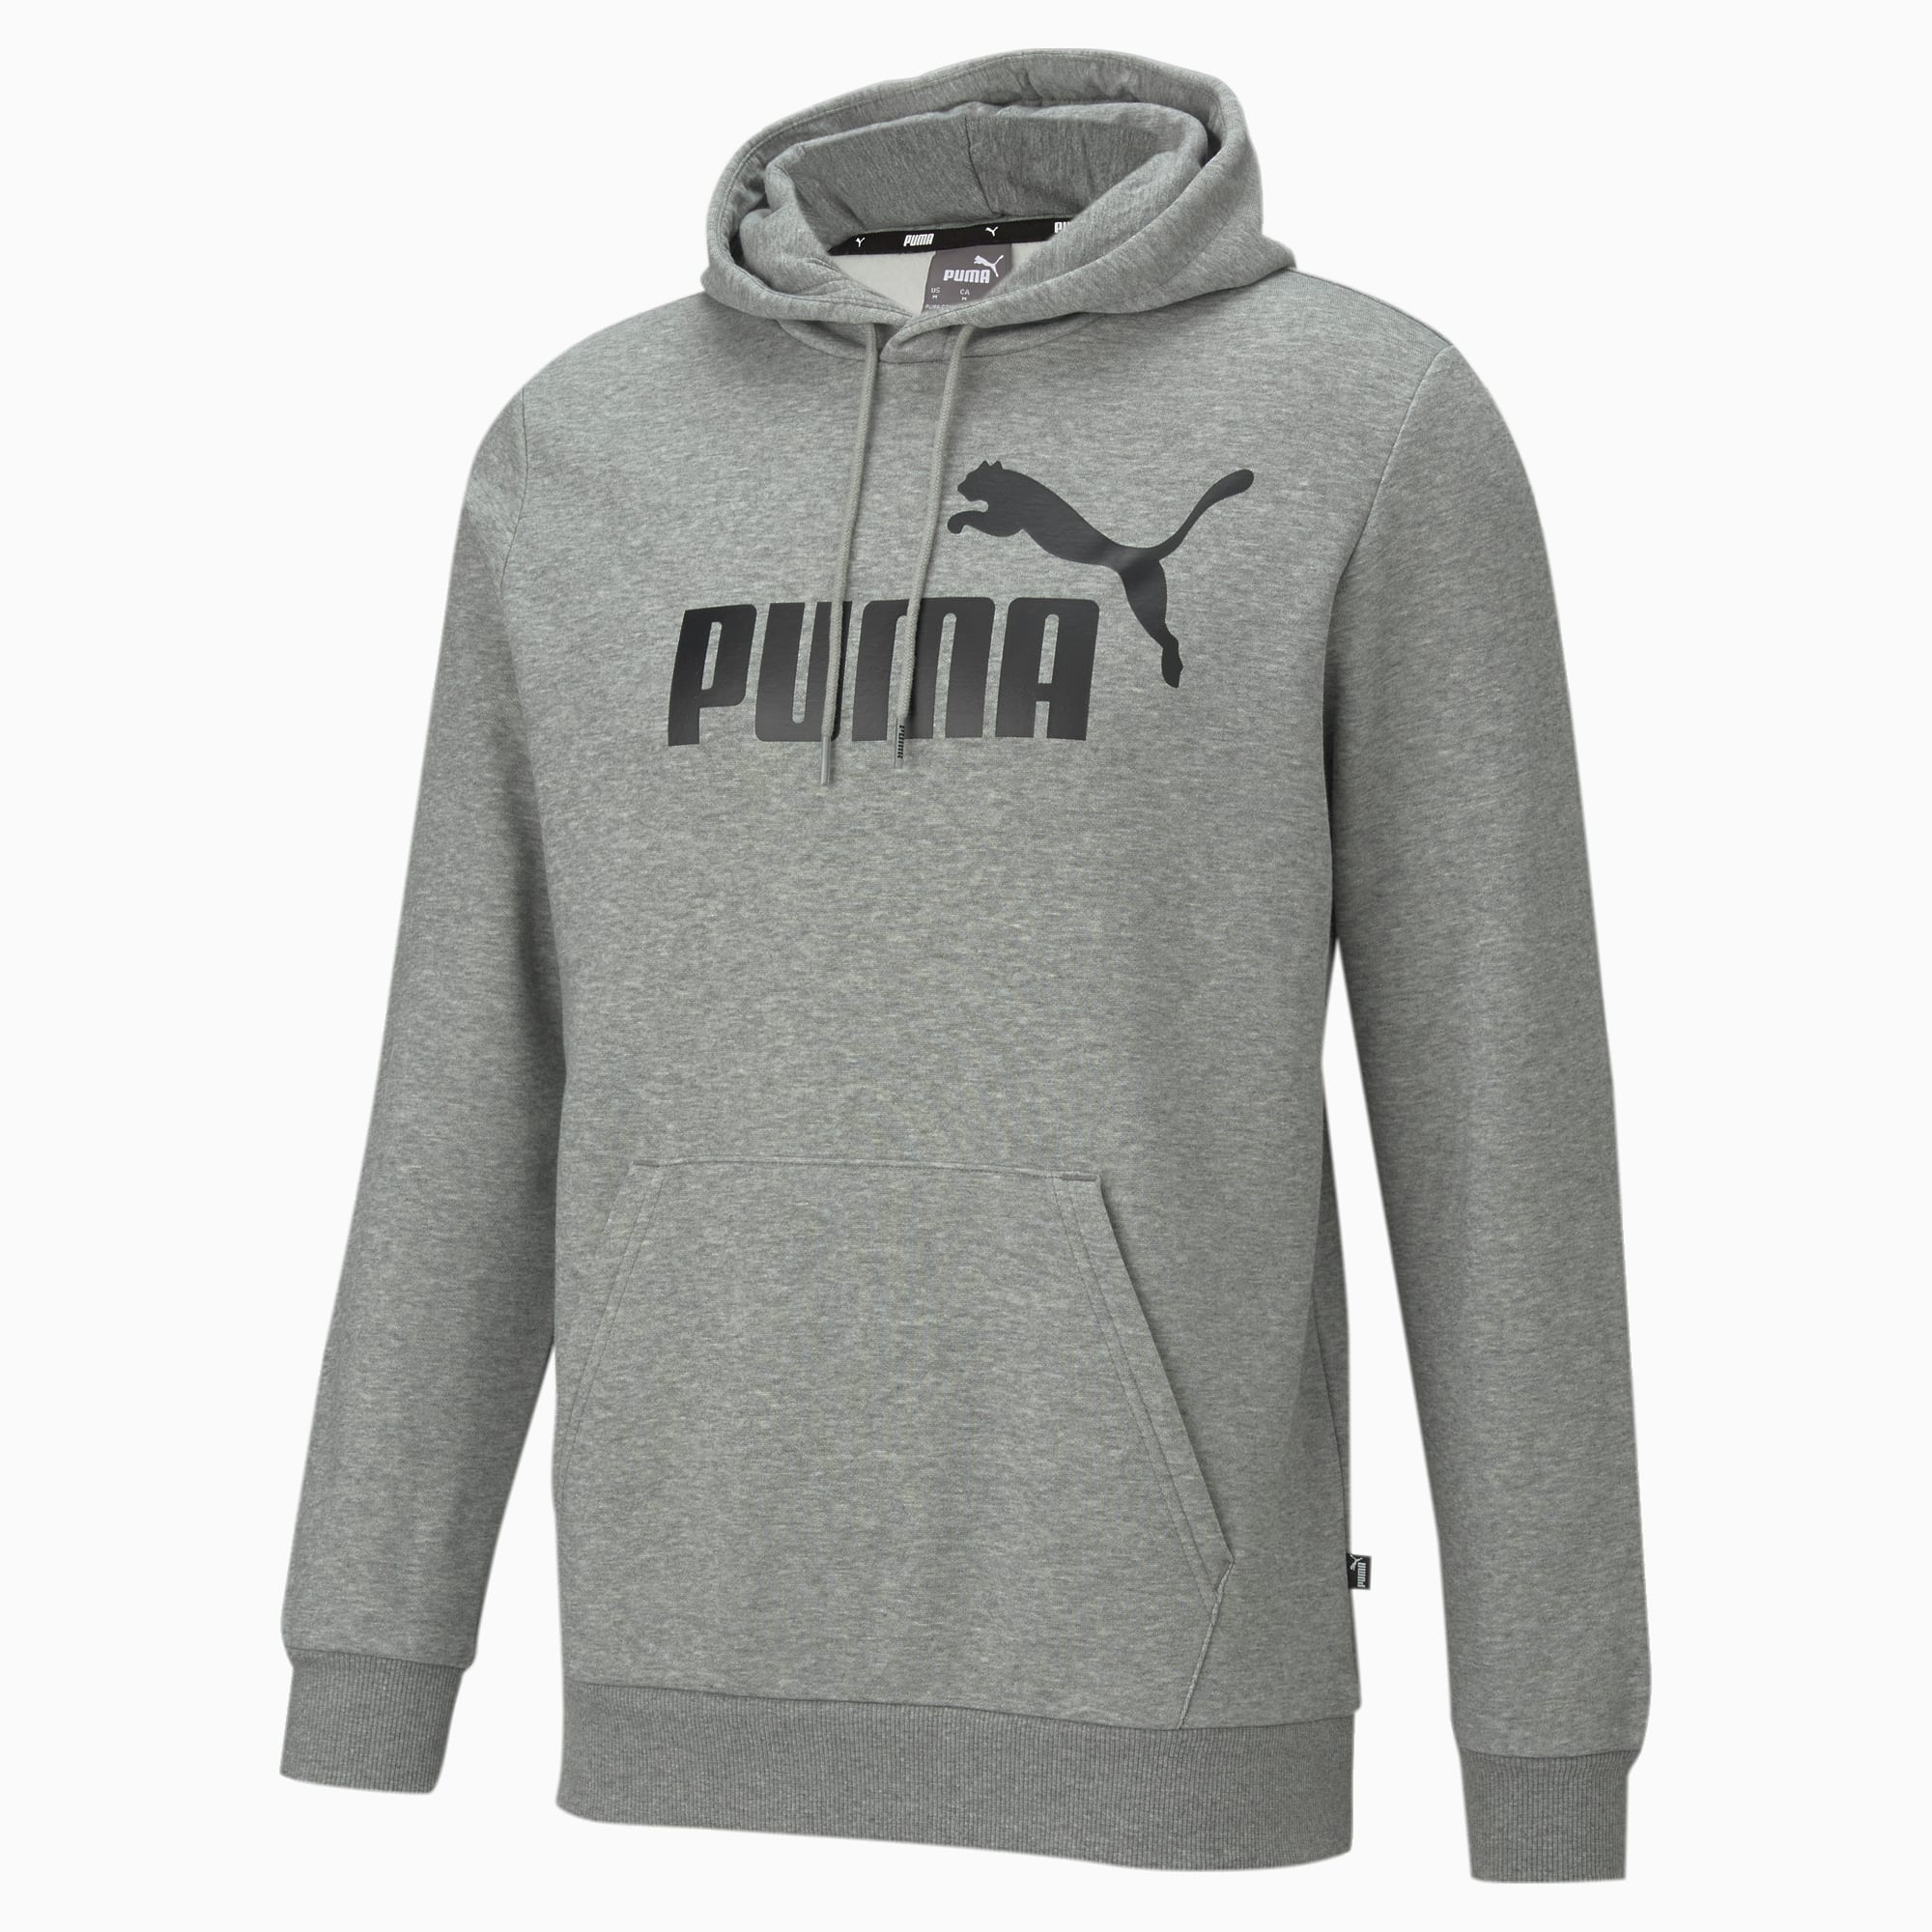 PUMA Essentials Big Logo Hoodie Men, Medium Grey Heather, Size L, Clothing